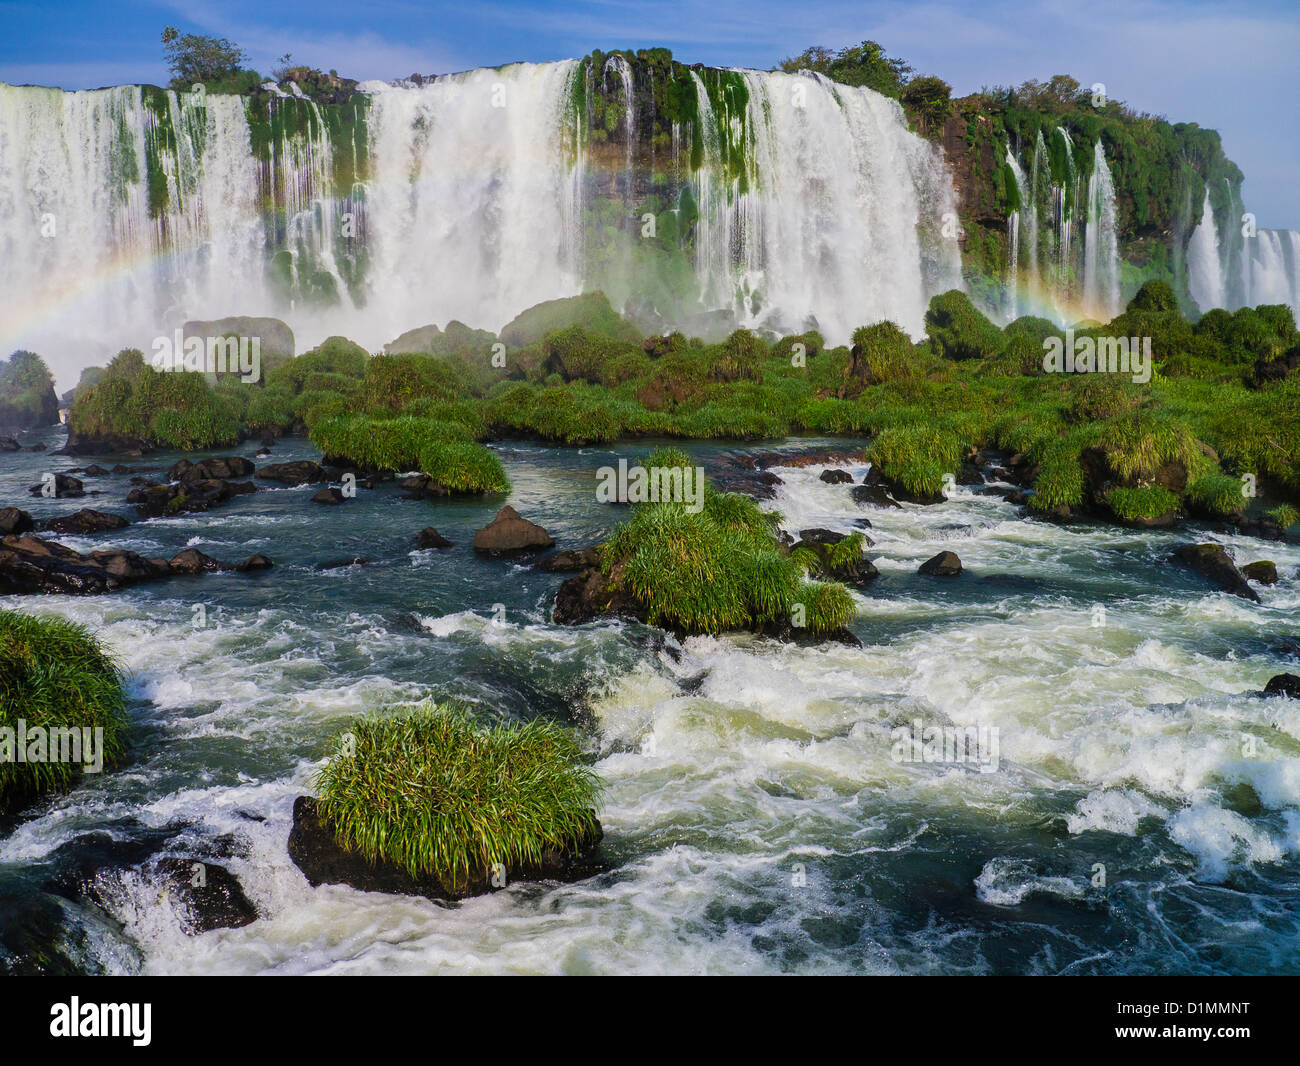 Foz de Iguazu auf der brasilianischen Seite. Riesigen Wasserfall mit mehreren Katarakte sichtbar. Stockfoto